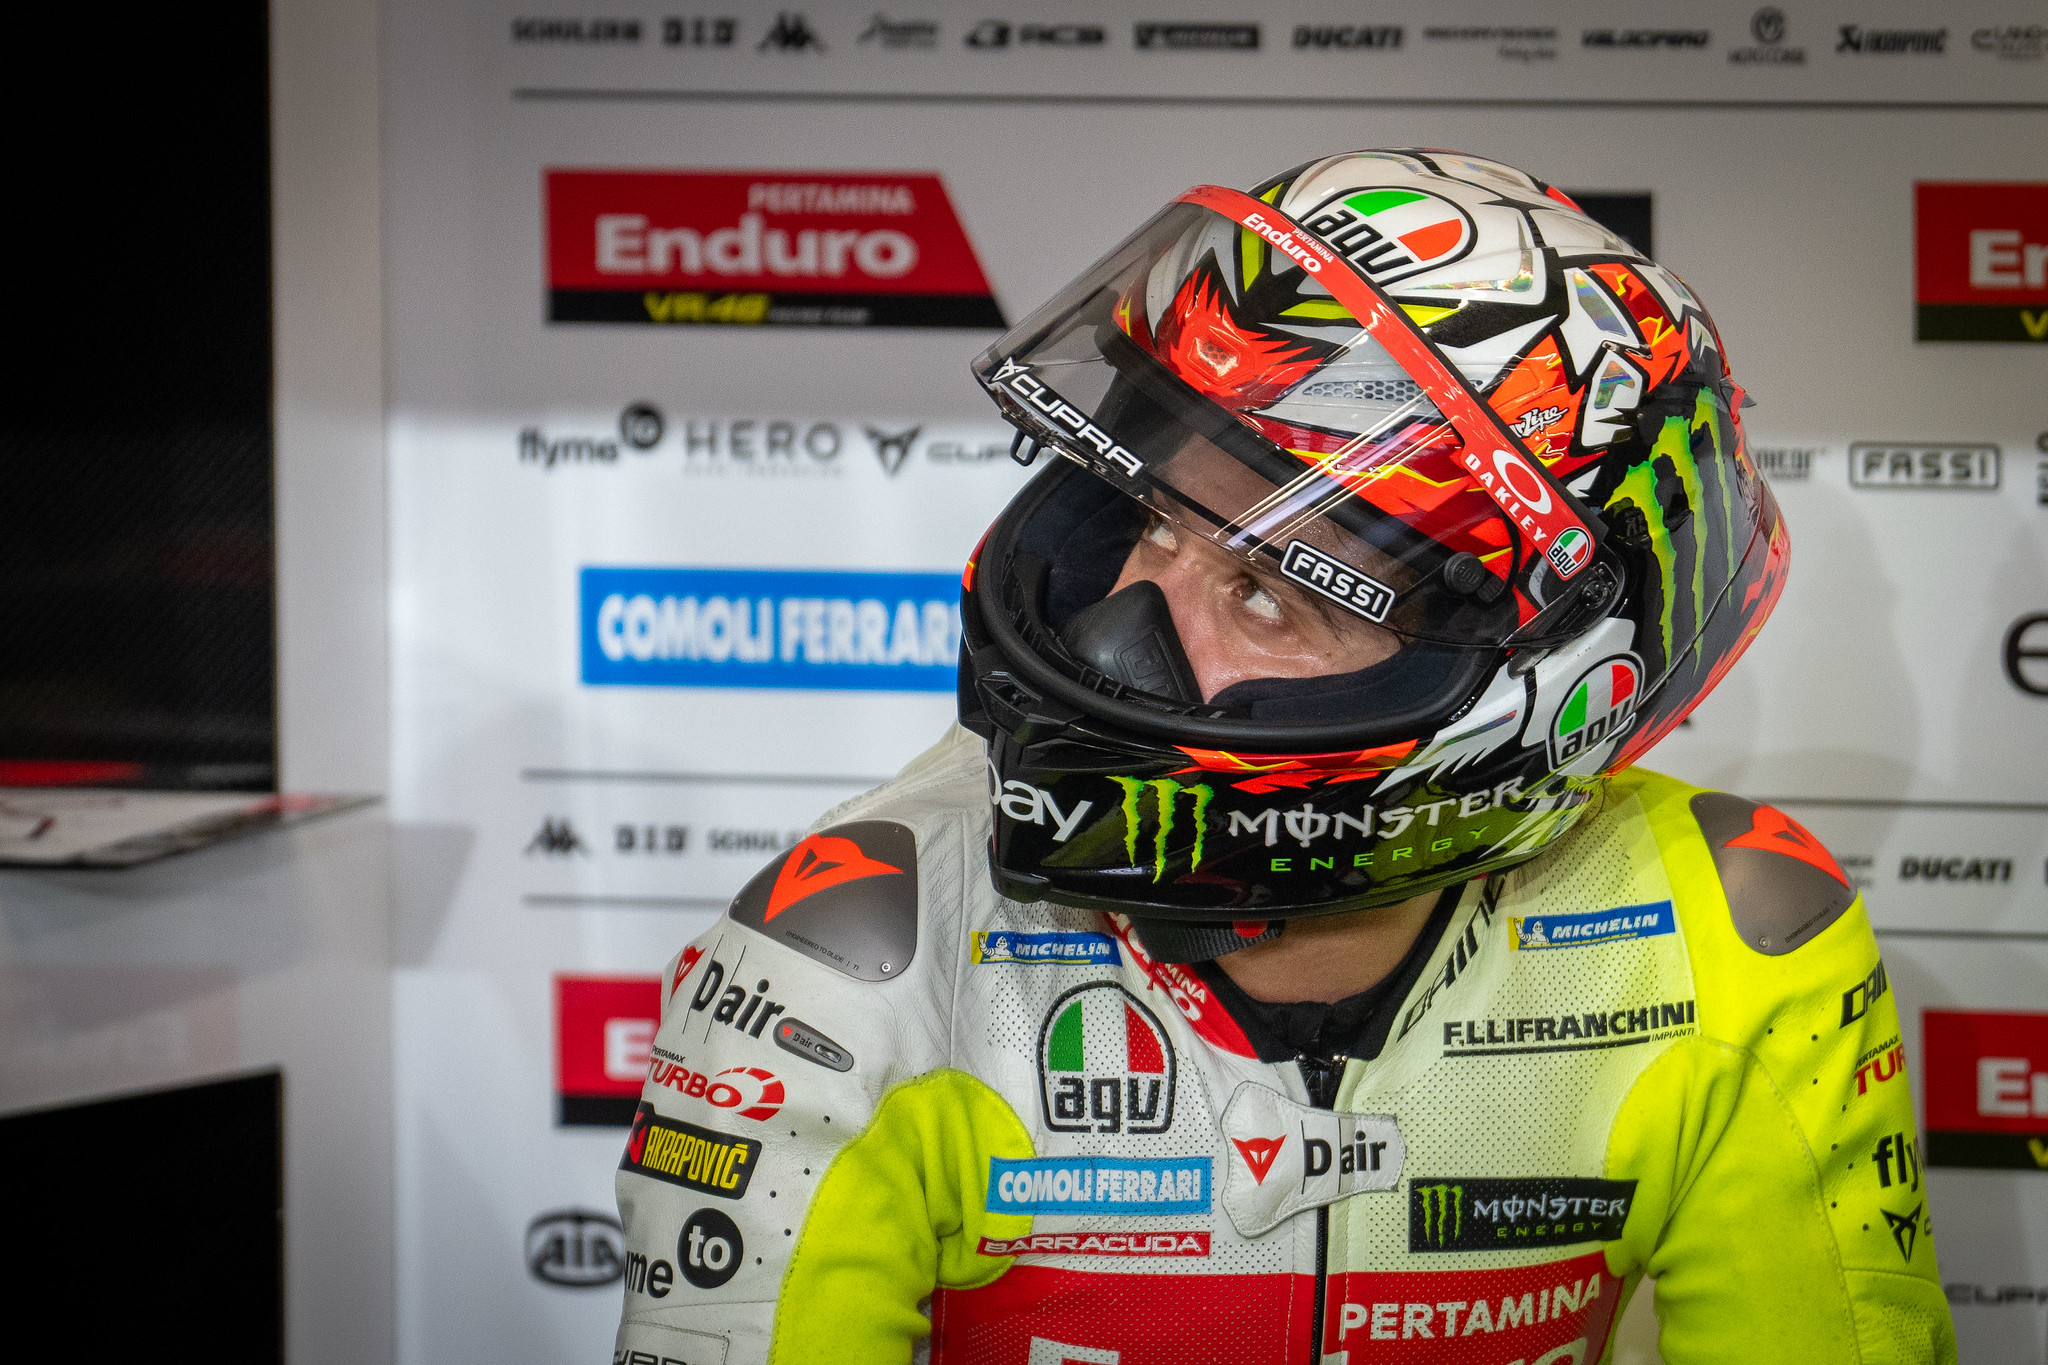 #72 Marco Bezzecchi - (ITA) - Pertamina Enduro VR46 MotoGP™ Team - Ducati Desmosedici GP23